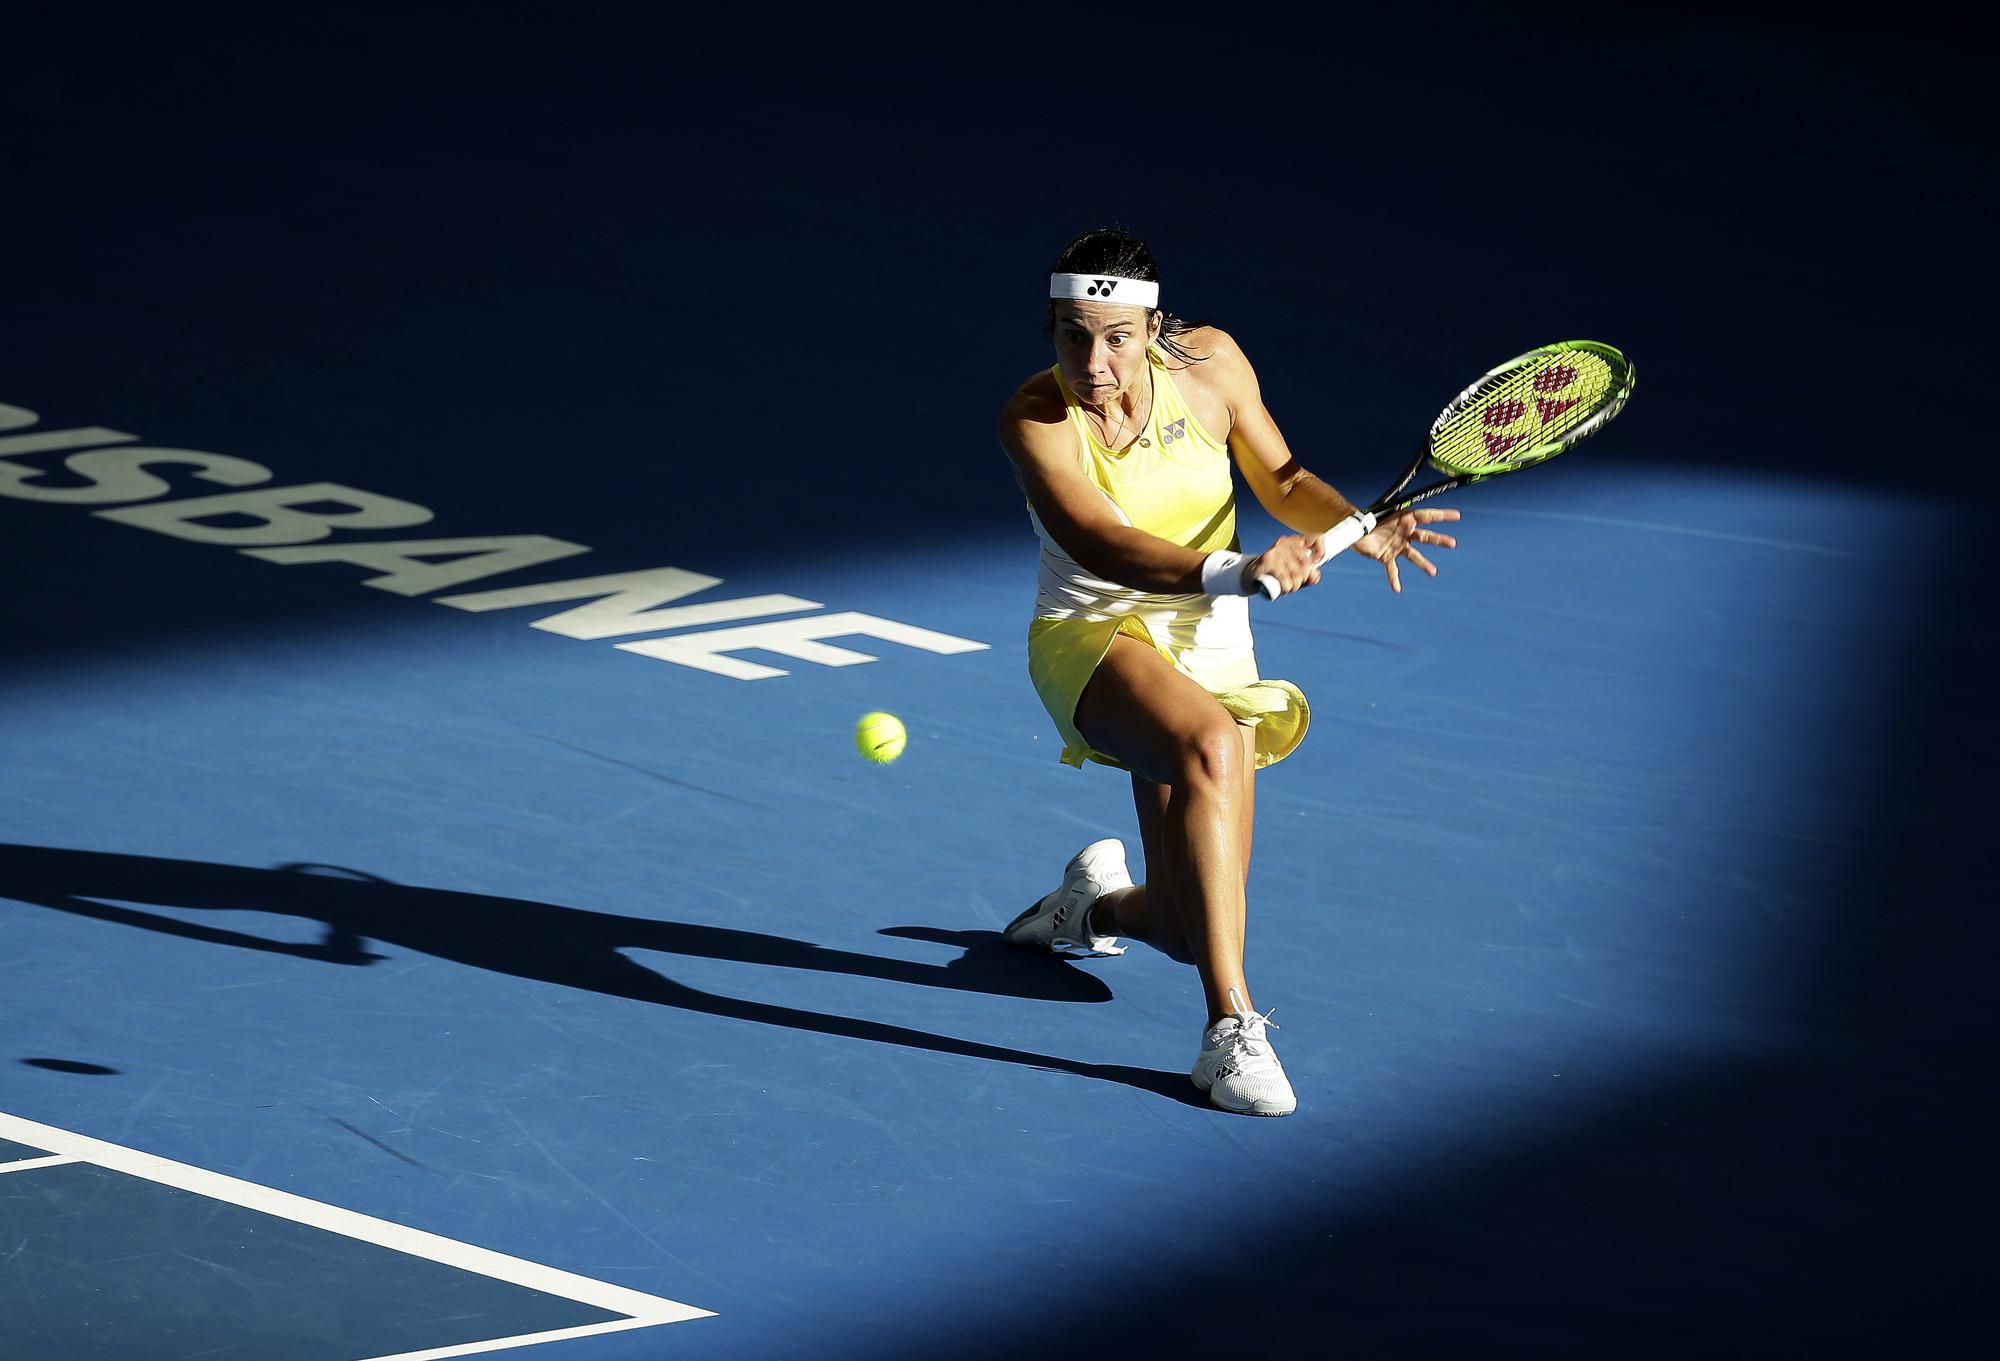 Lotyšská tenistka Anastasija Sevastova v Brisbane,.